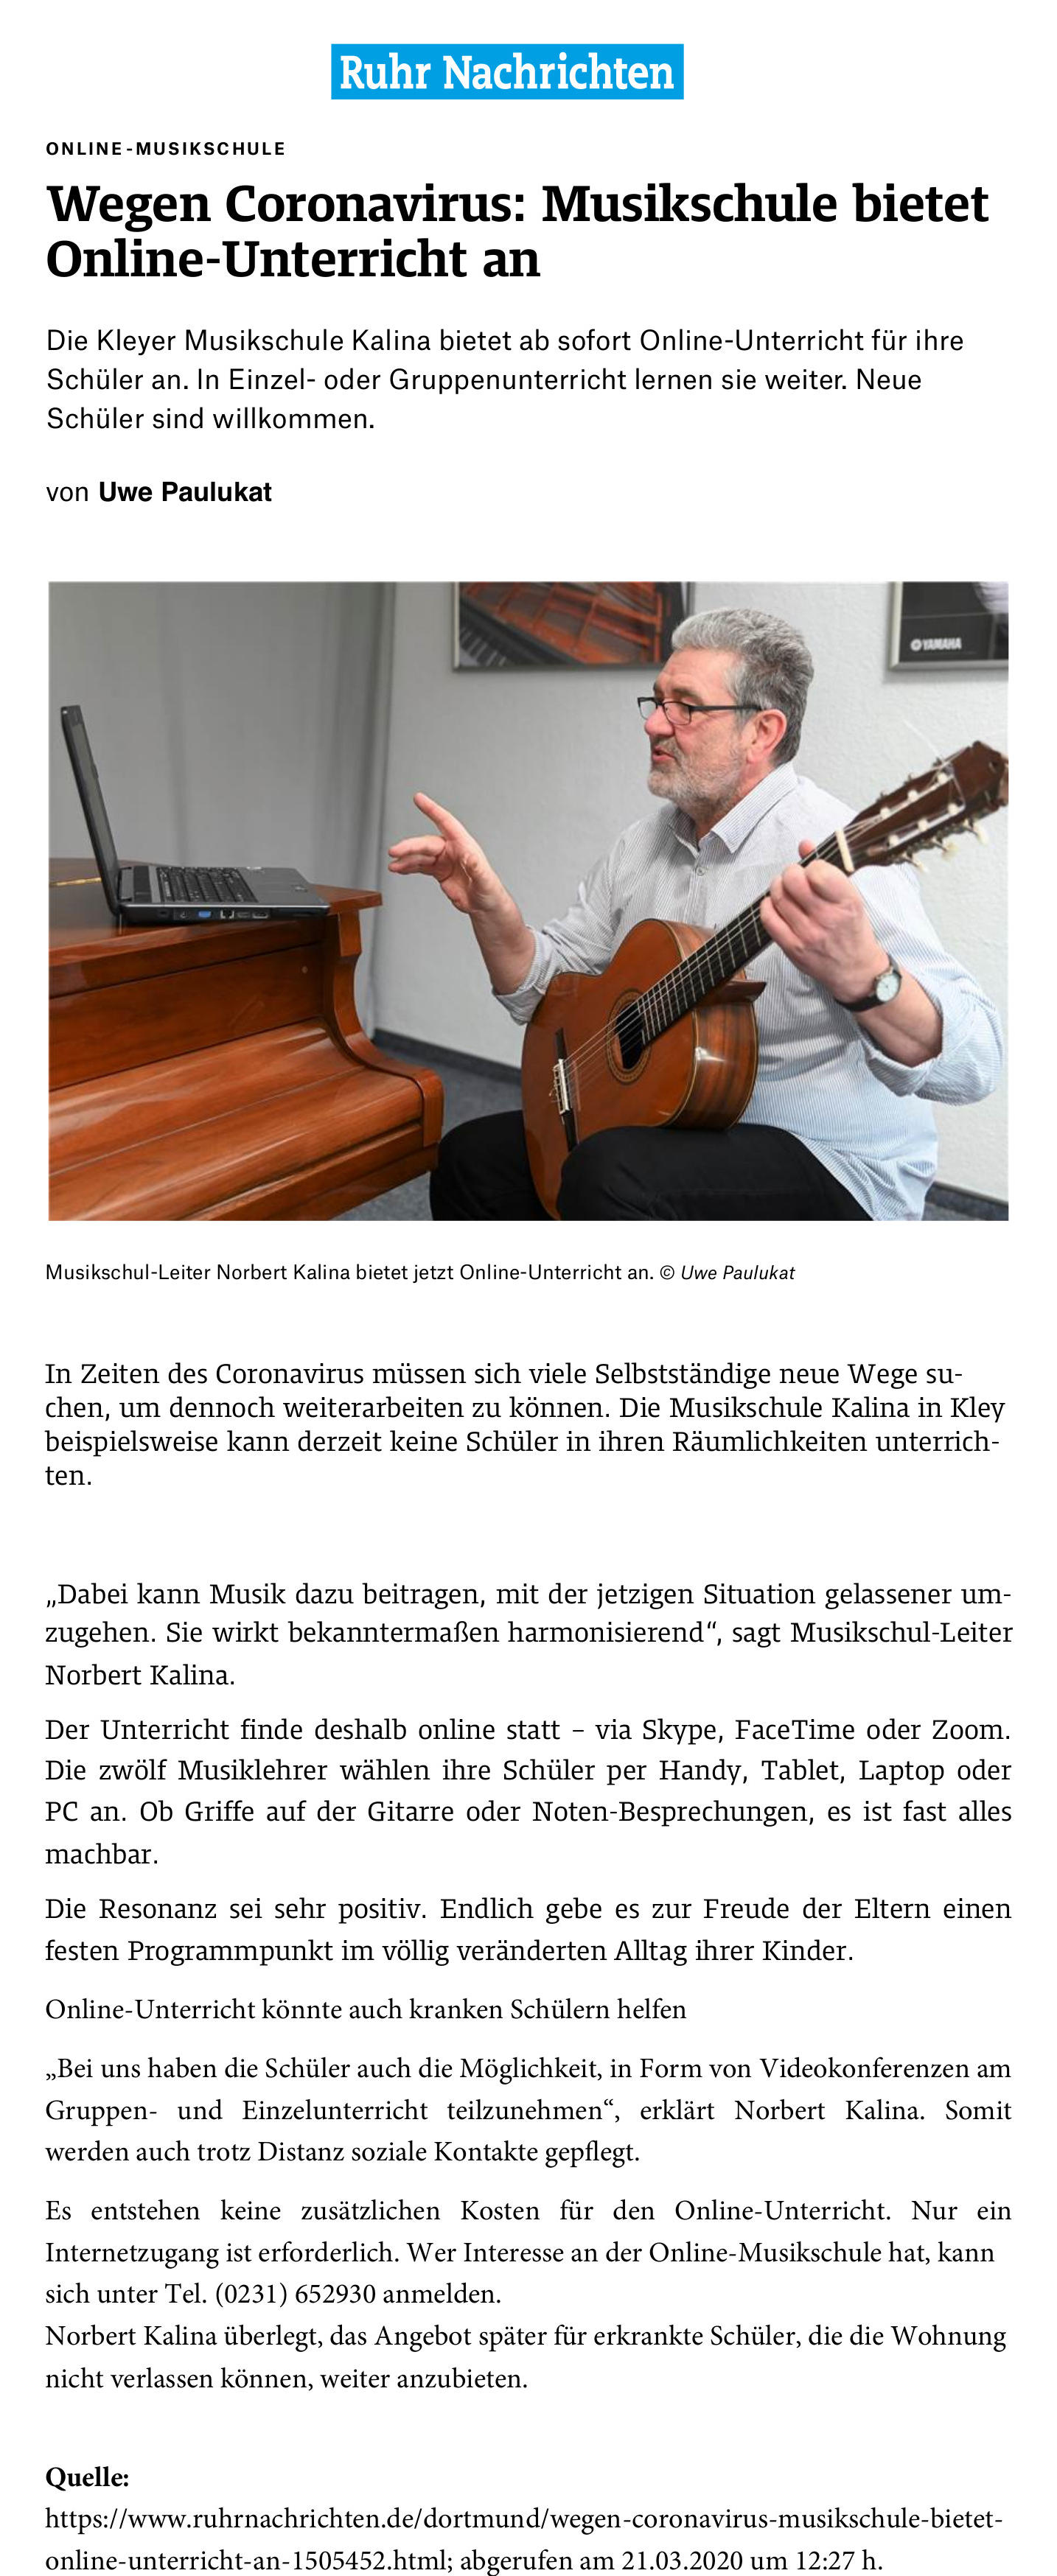 Musikschule Kalina bietet Online-Unterricht an (Quelle: RuhrNachrichten)